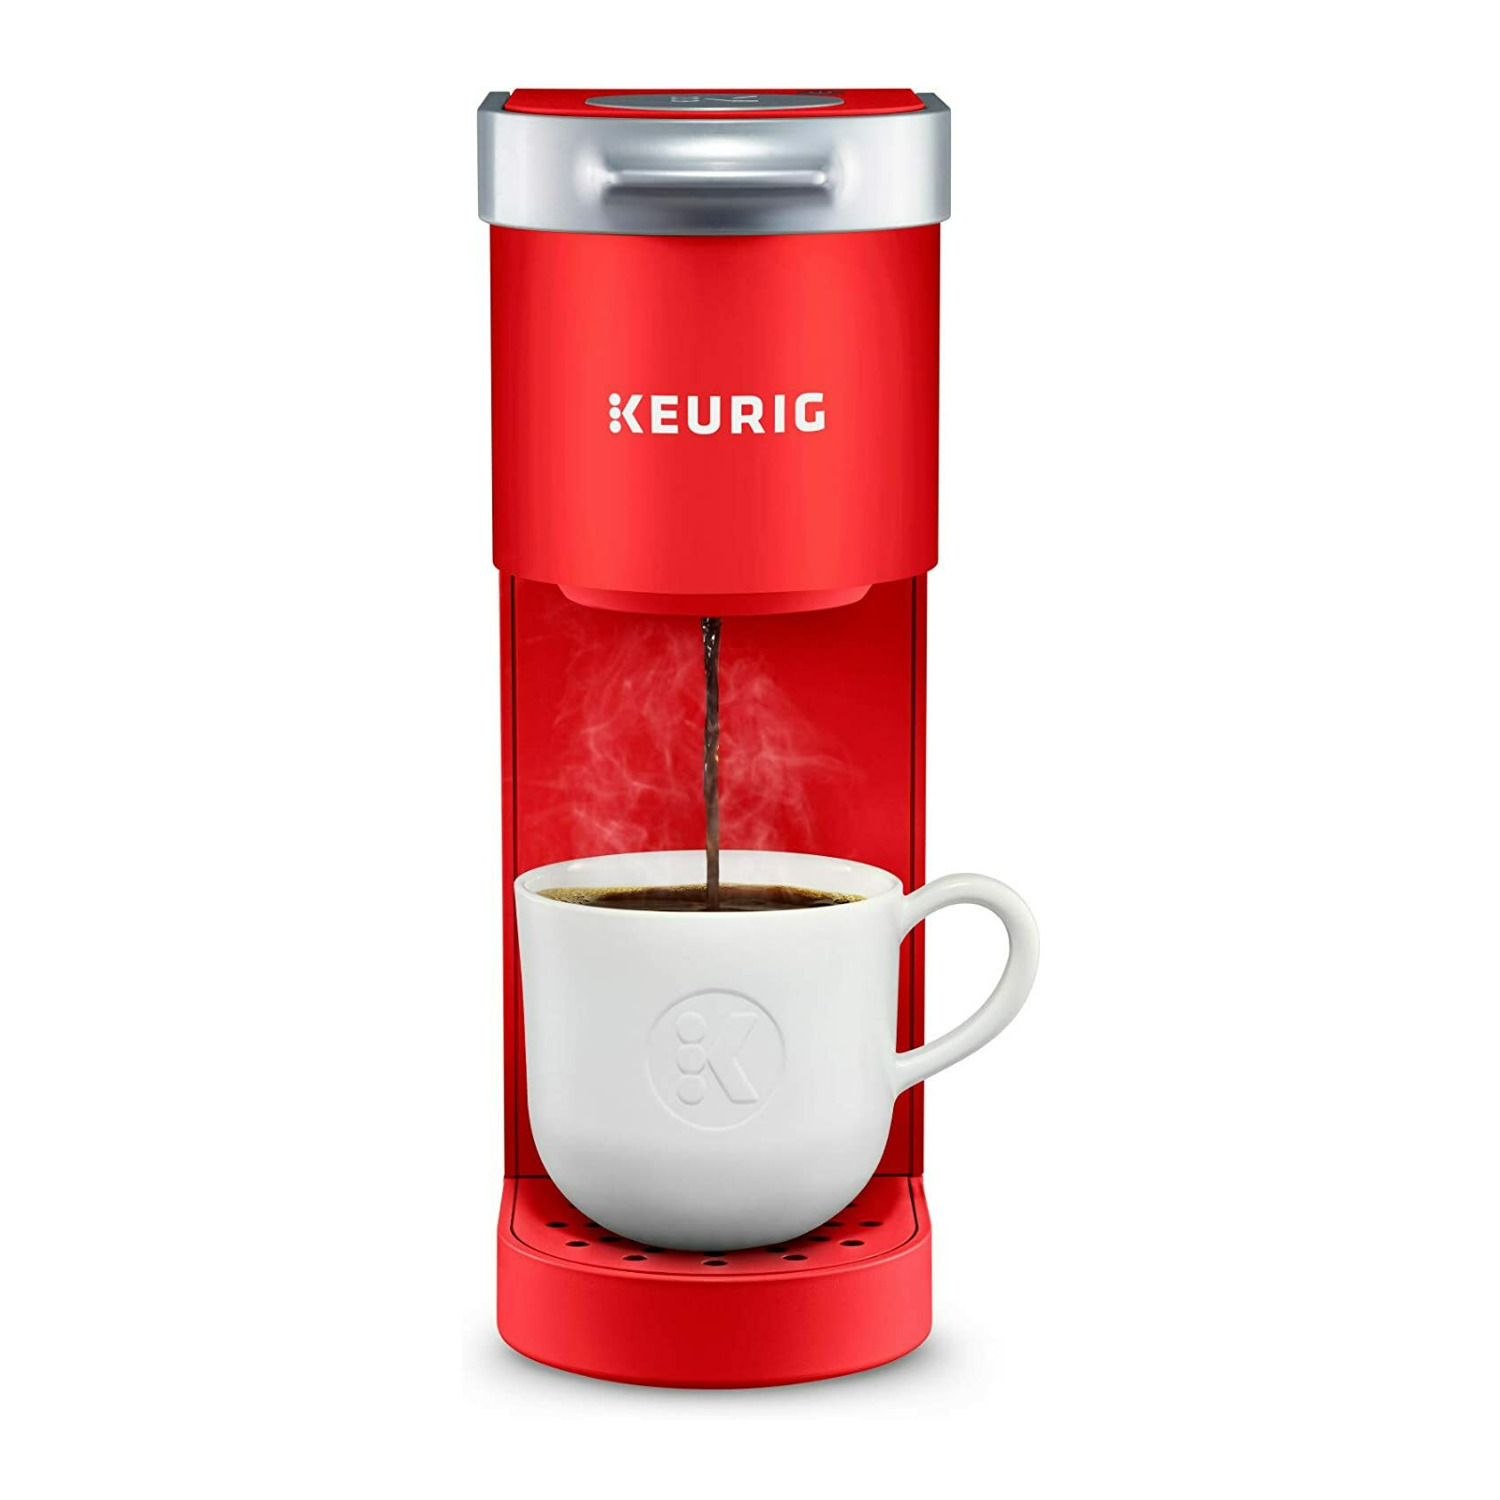 Keurig K-Mini Single Serve K-Cup Pod Coffee Maker, Poppy Red - image 3 of 9